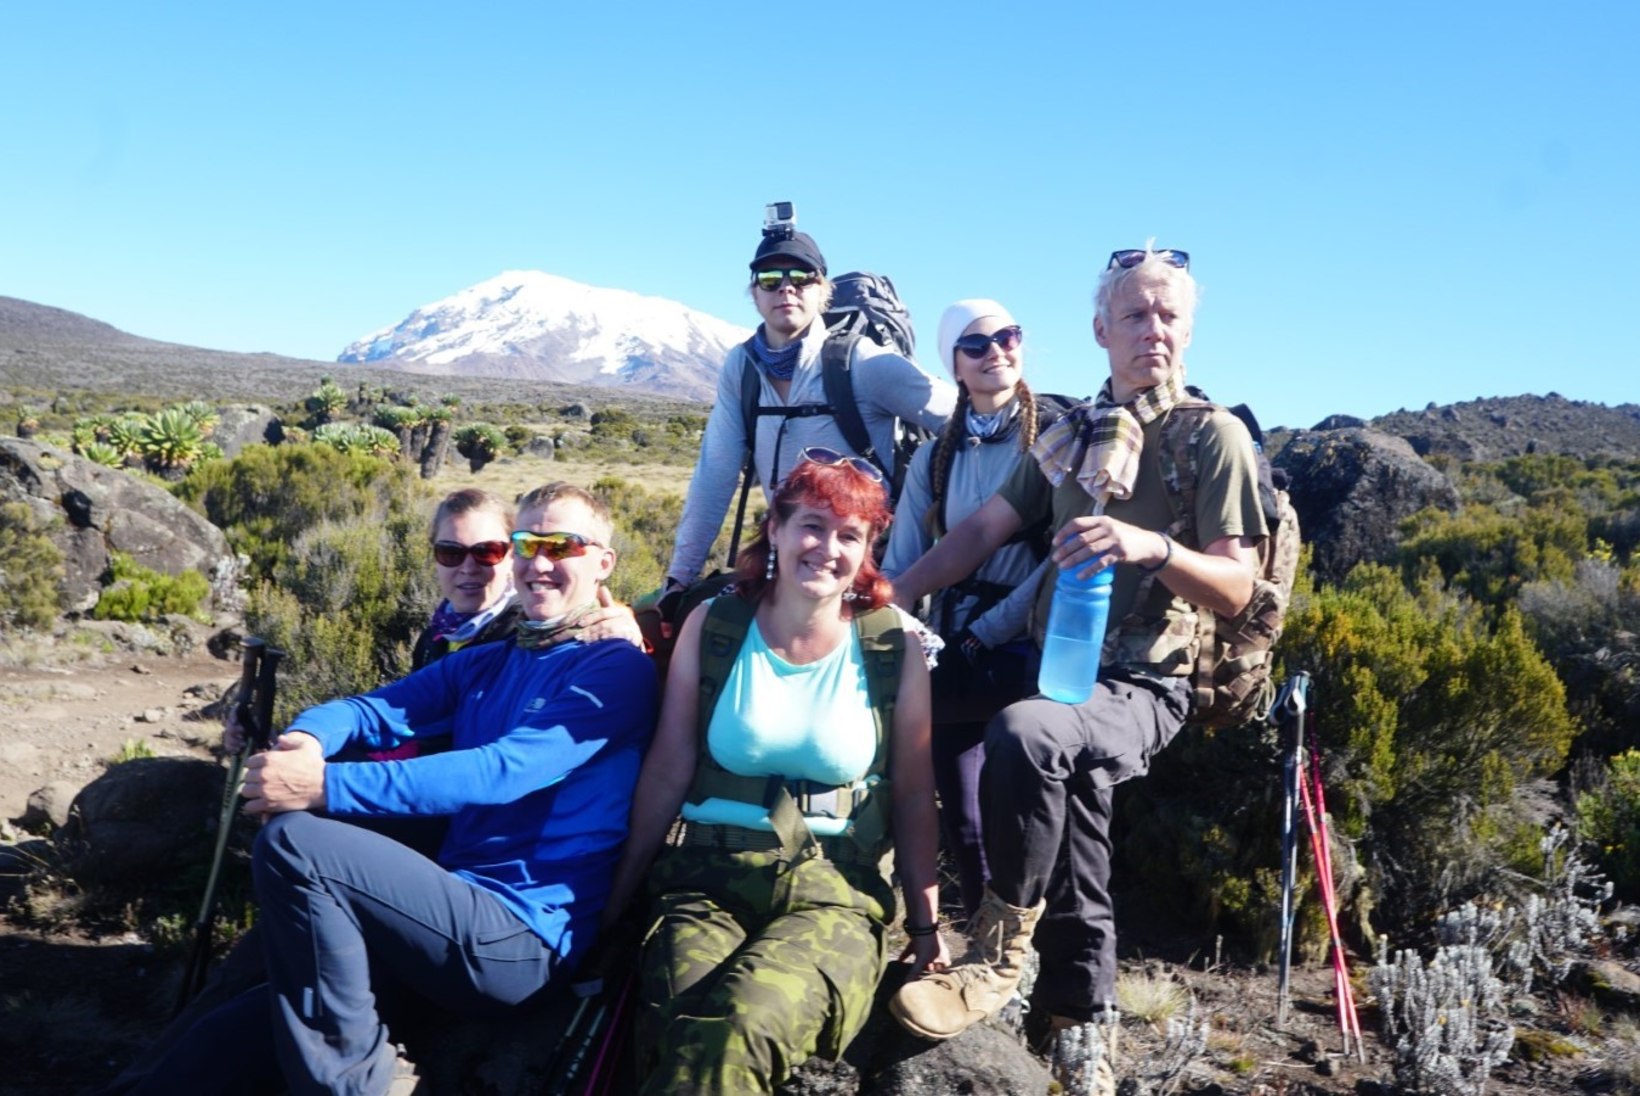 Kuidas meeldis? Kolm paari läksid Kilimanjarole suhteprobleeme lahendama